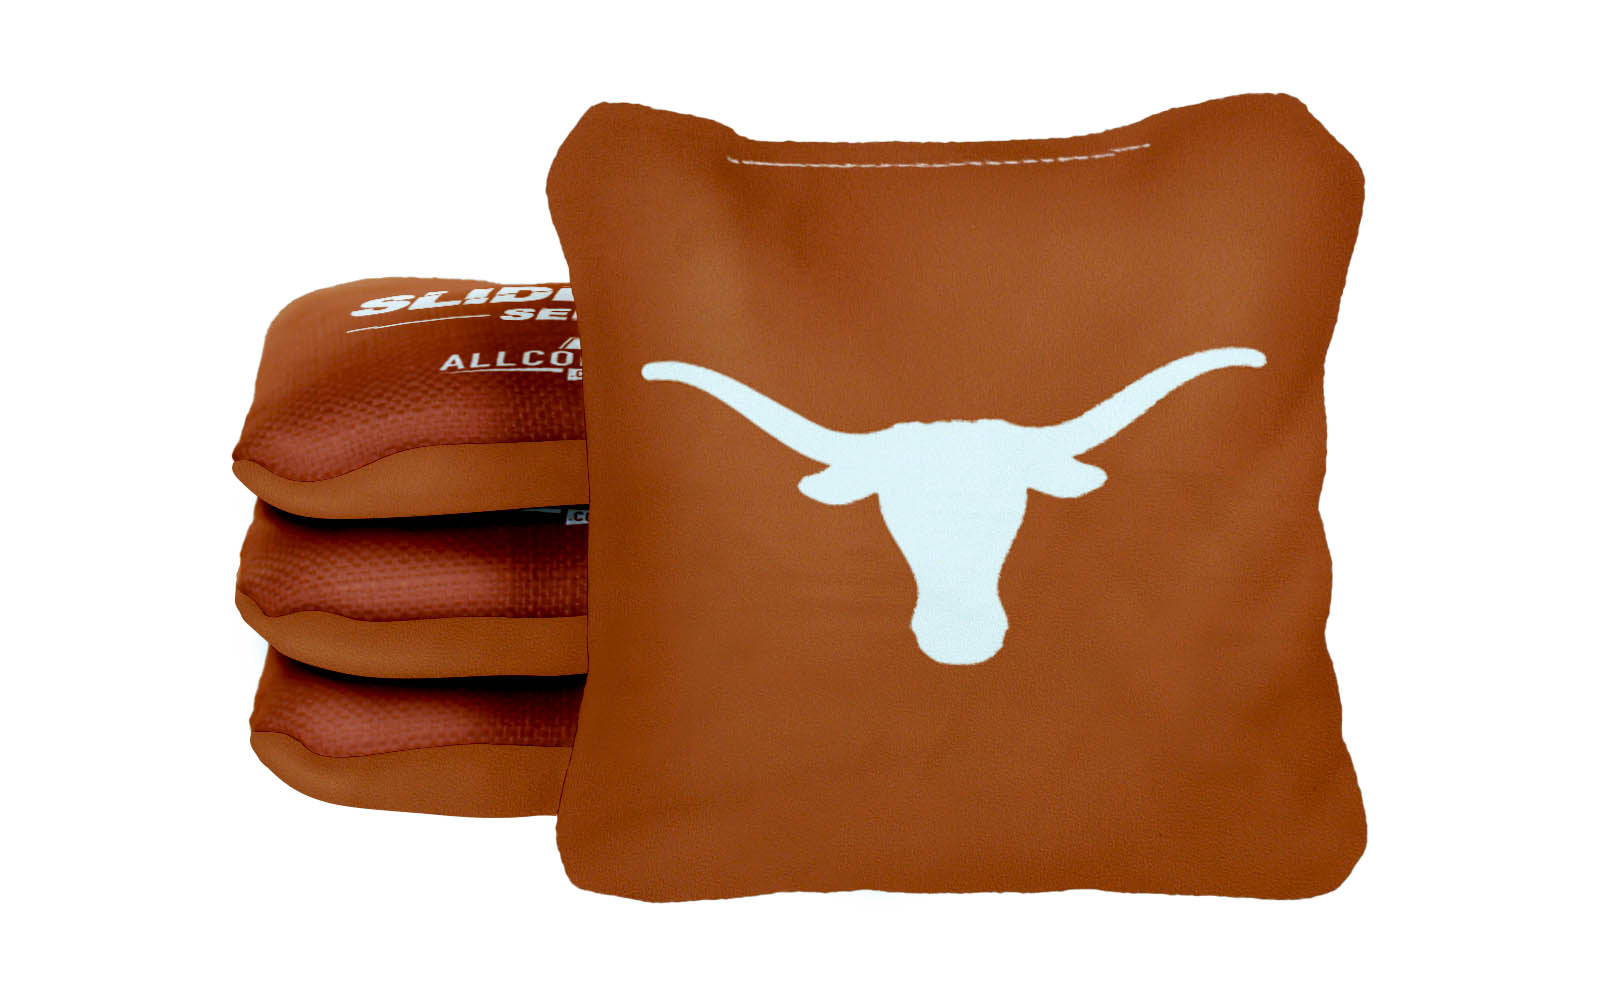 Officially Licensed Collegiate Cornhole Bags - AllCornhole Slide Rite - Set of 4 - University of Texas at Austin